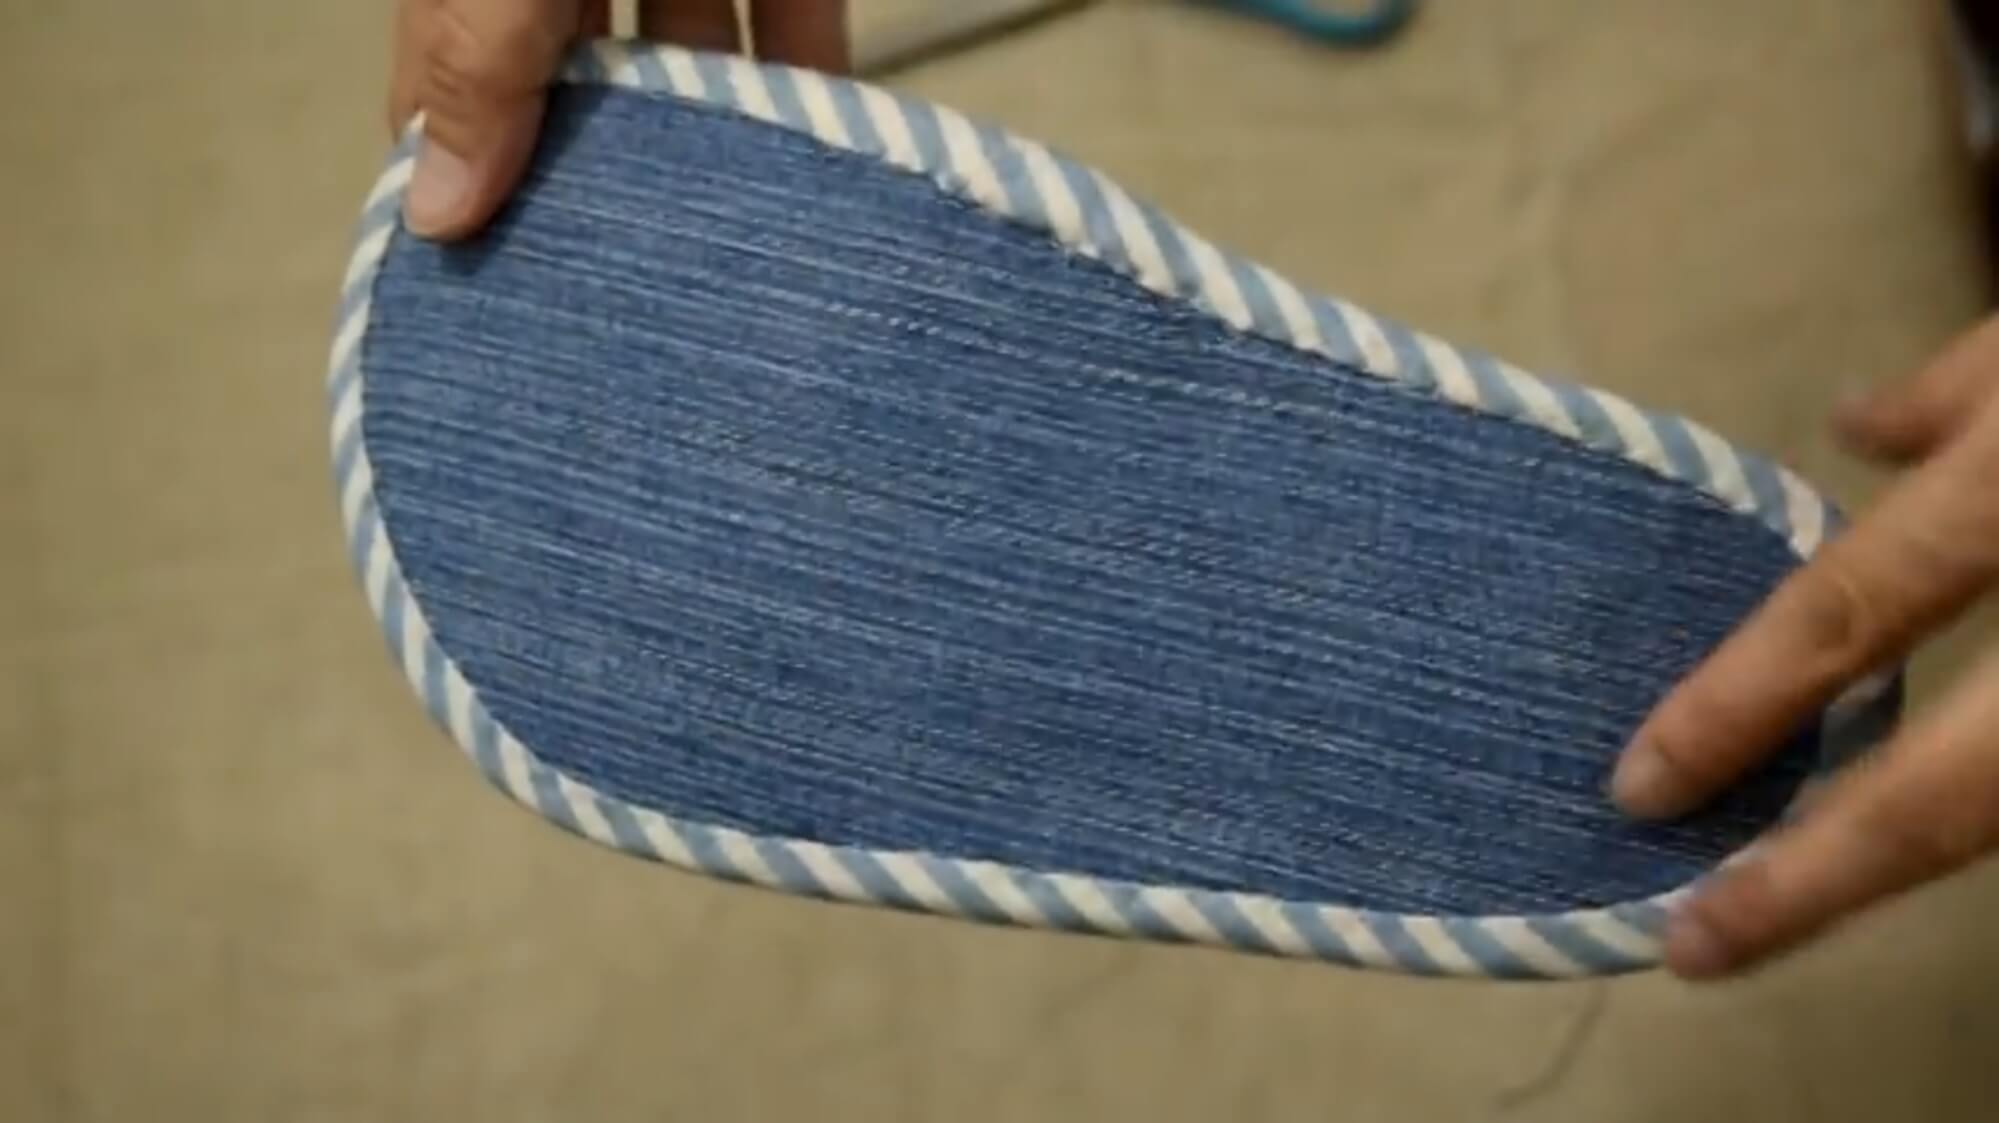 Выкройка тапочек своими руками — выбор размера, схемы и инструкции по шитью из меха, джинсов, ткани